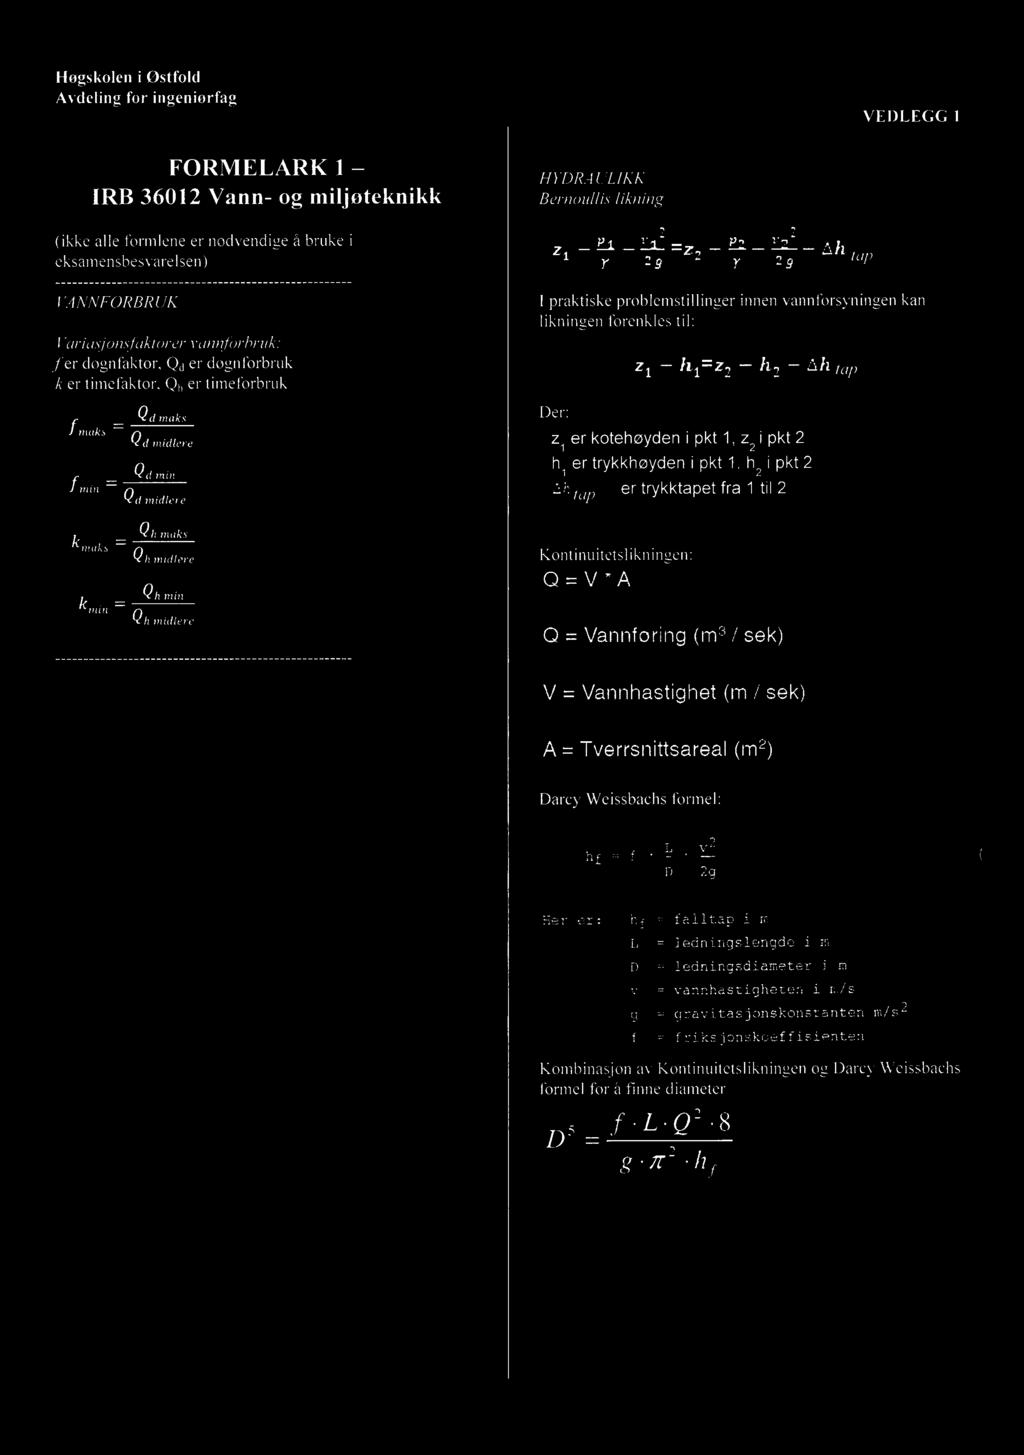 Hogskolen i Østfold VEDLEGG 1 FORMELARK 1 HYDRAULIKK IRB 3612 Vann- og miljøteknikk Bernoullis likning (ikke alle formlene er nødvendige å bruke i eksamensbesvarelsen) 22?